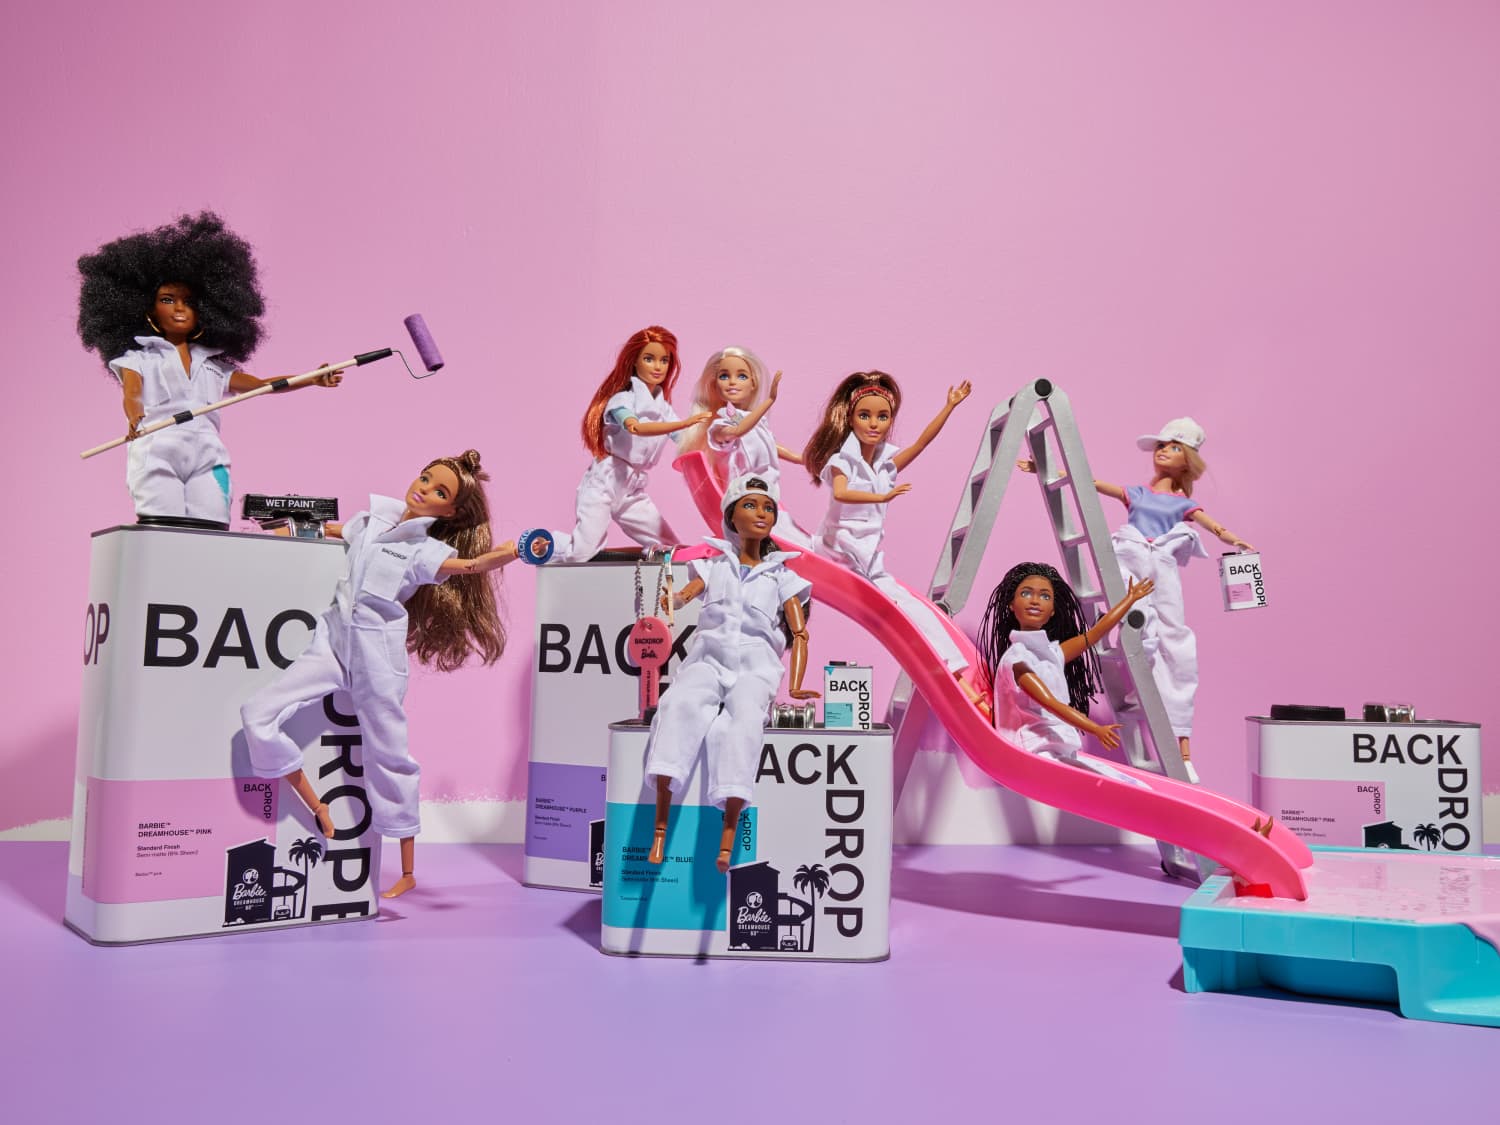 Barbie Color Reveal – Dream Team Boutique NE